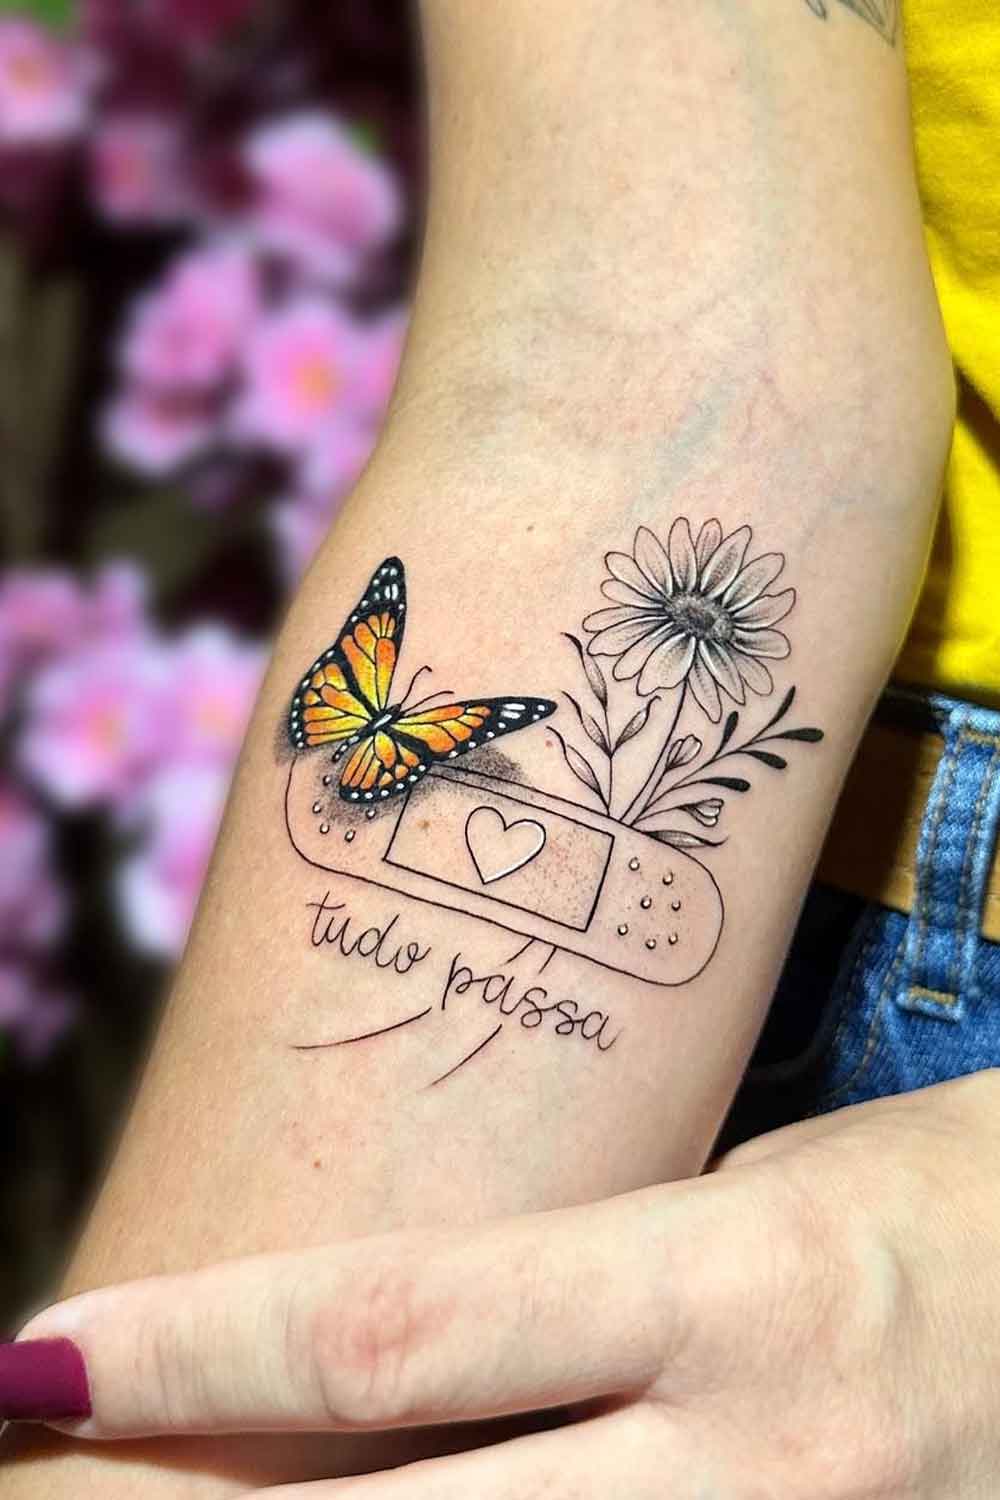 tatuagem-de-band-aid-com-borboleta-e-girassol-escrito-tudo-passa 